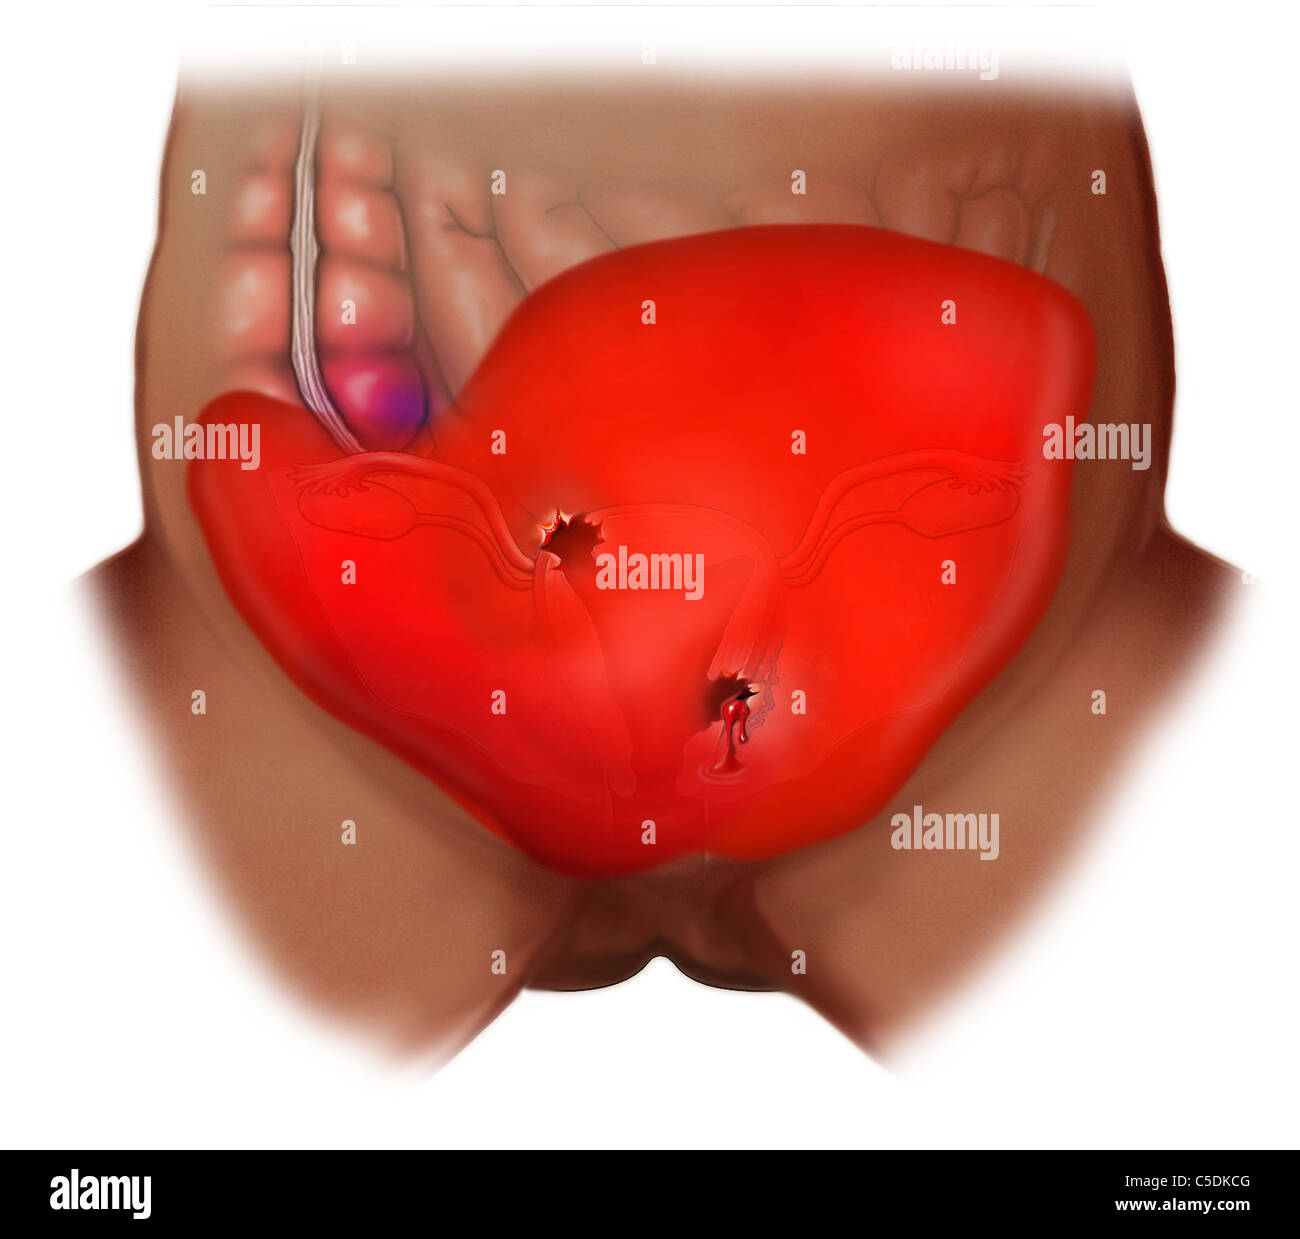 Perforated Uterus and Hemorrhage Stock Photo